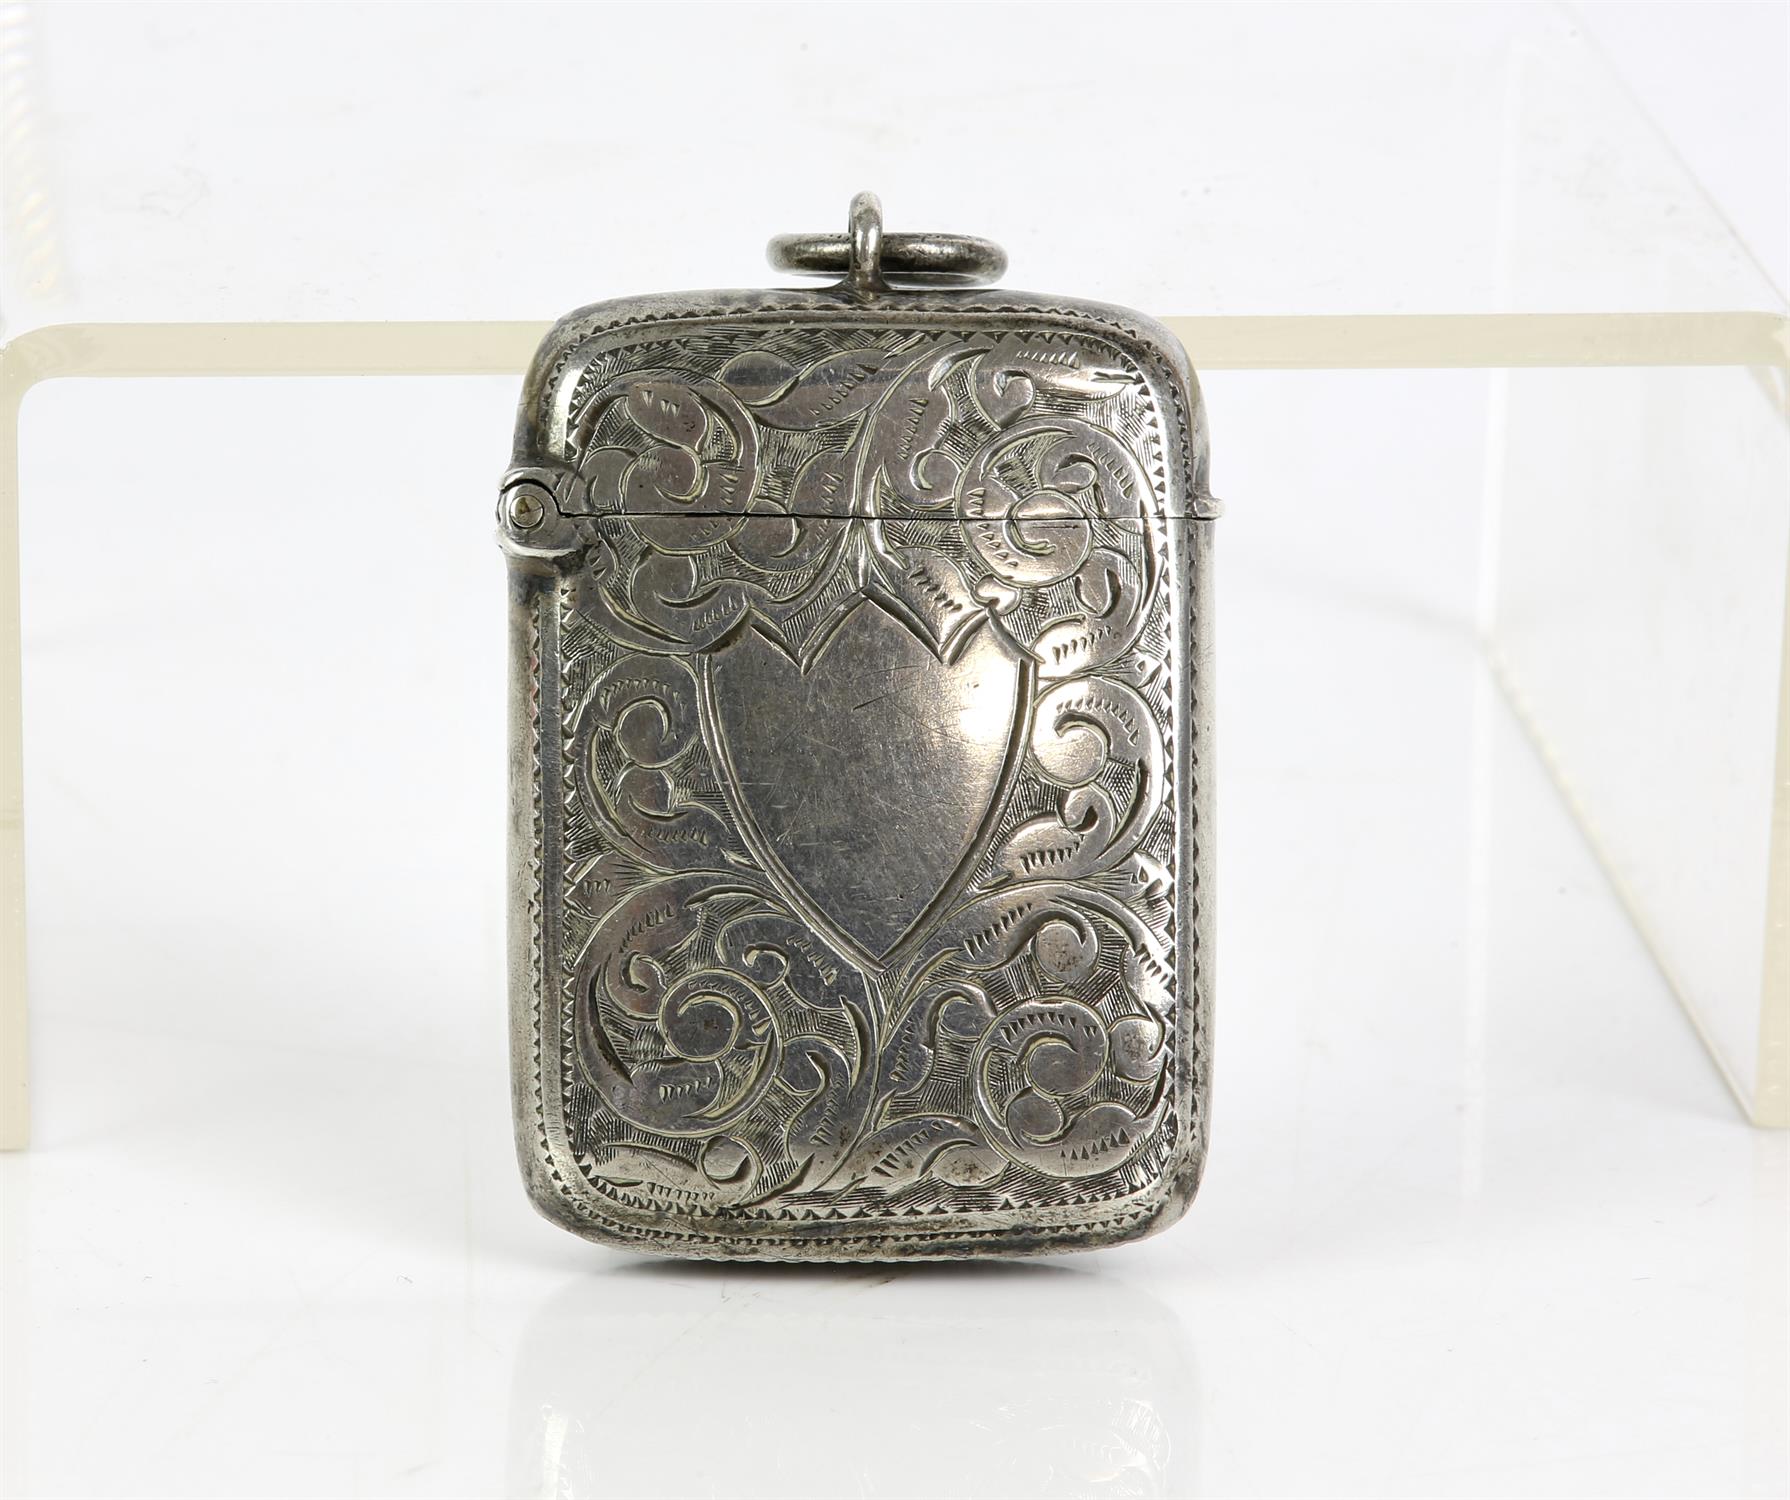 Vietona silver brightcut vesta case with vacant shield cartouche, Birmingham 1897 - Image 2 of 2